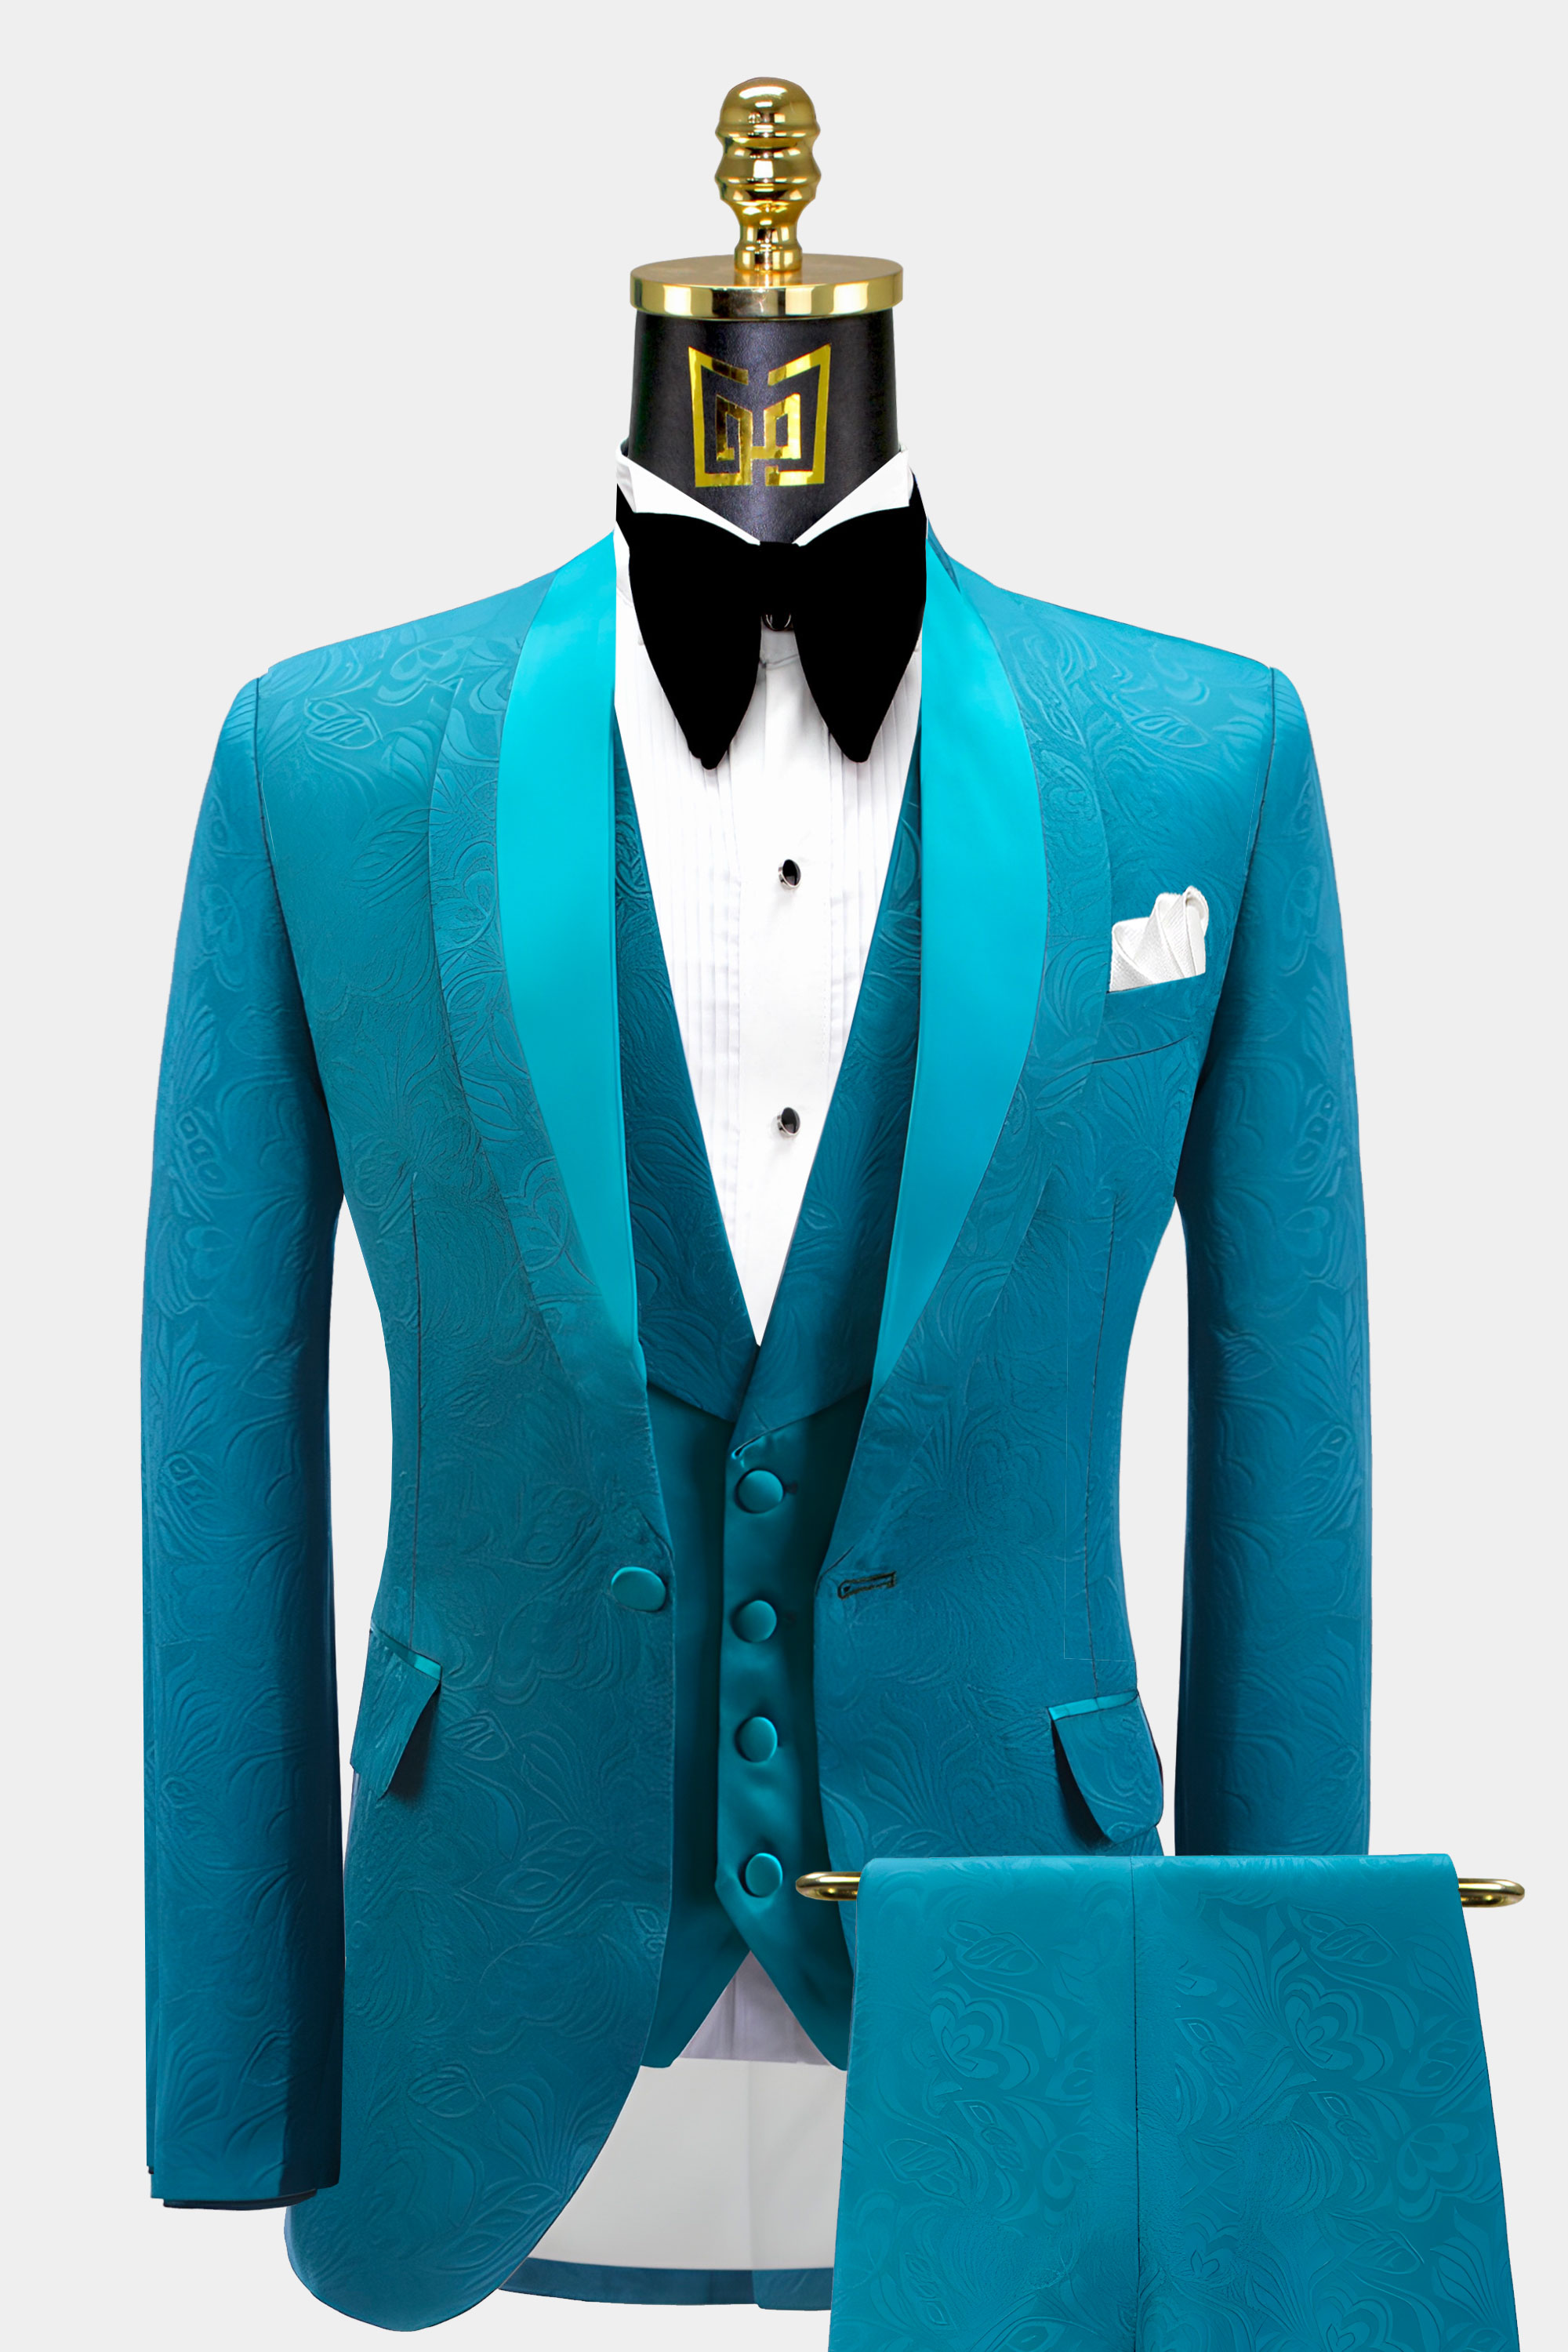 Mens-Turquoise-Blue-Tuxedo-Groom-Prom-Wedding-Suit-For-Men-from-Gentlemansguru.com